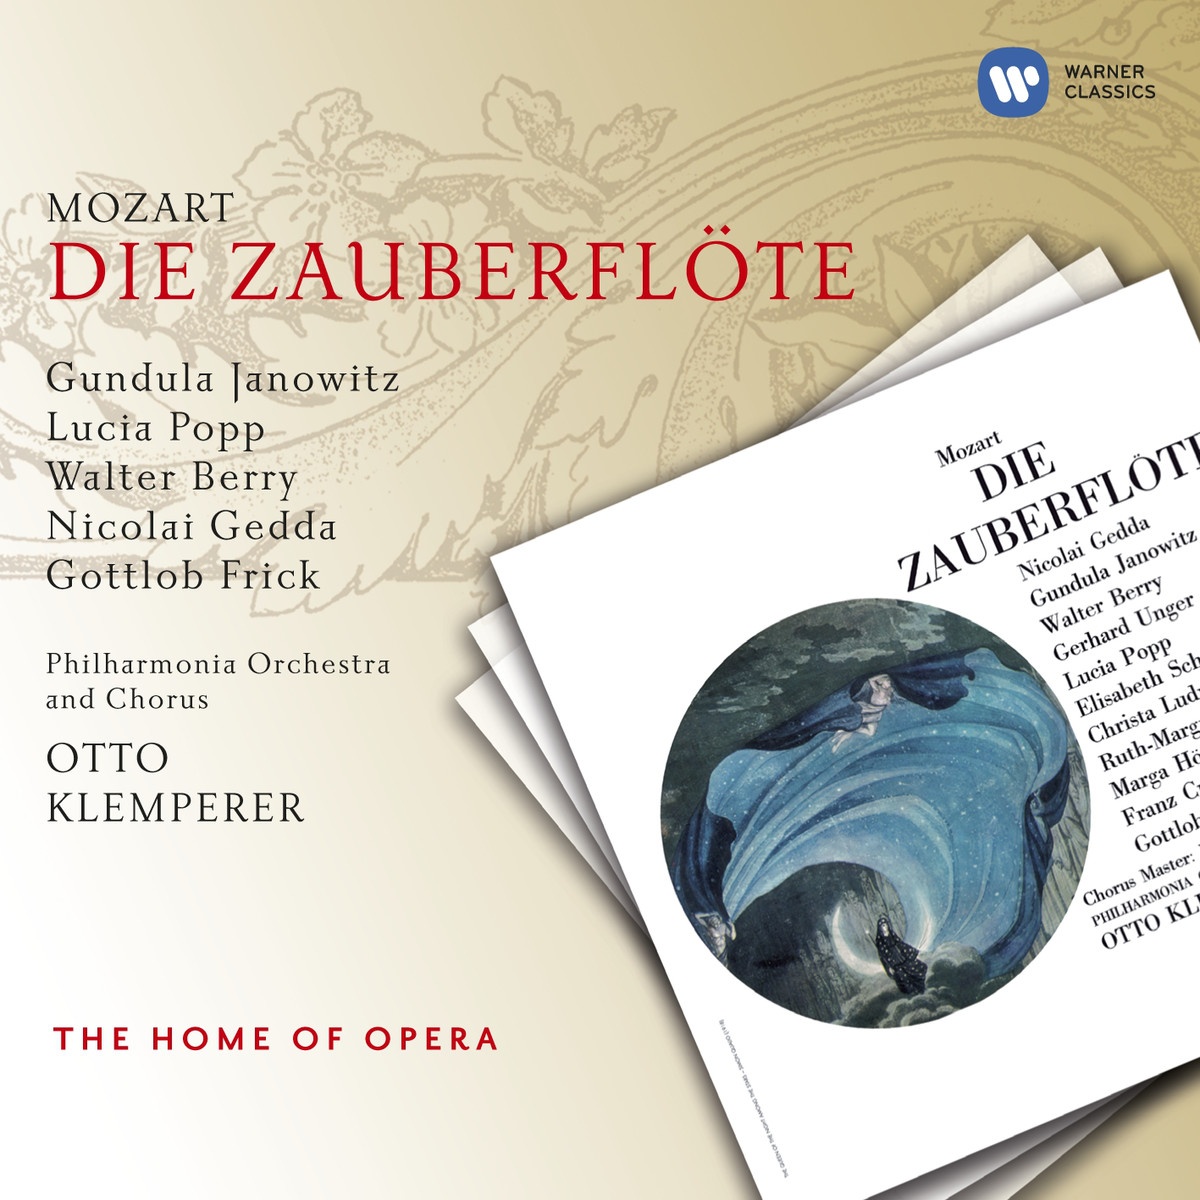 Die Zauberfl te, ' The Magic Flute' K620 2000 Digital Remaster, ACT 2: Arie: In diesen heil' gen Hallen Sarastro